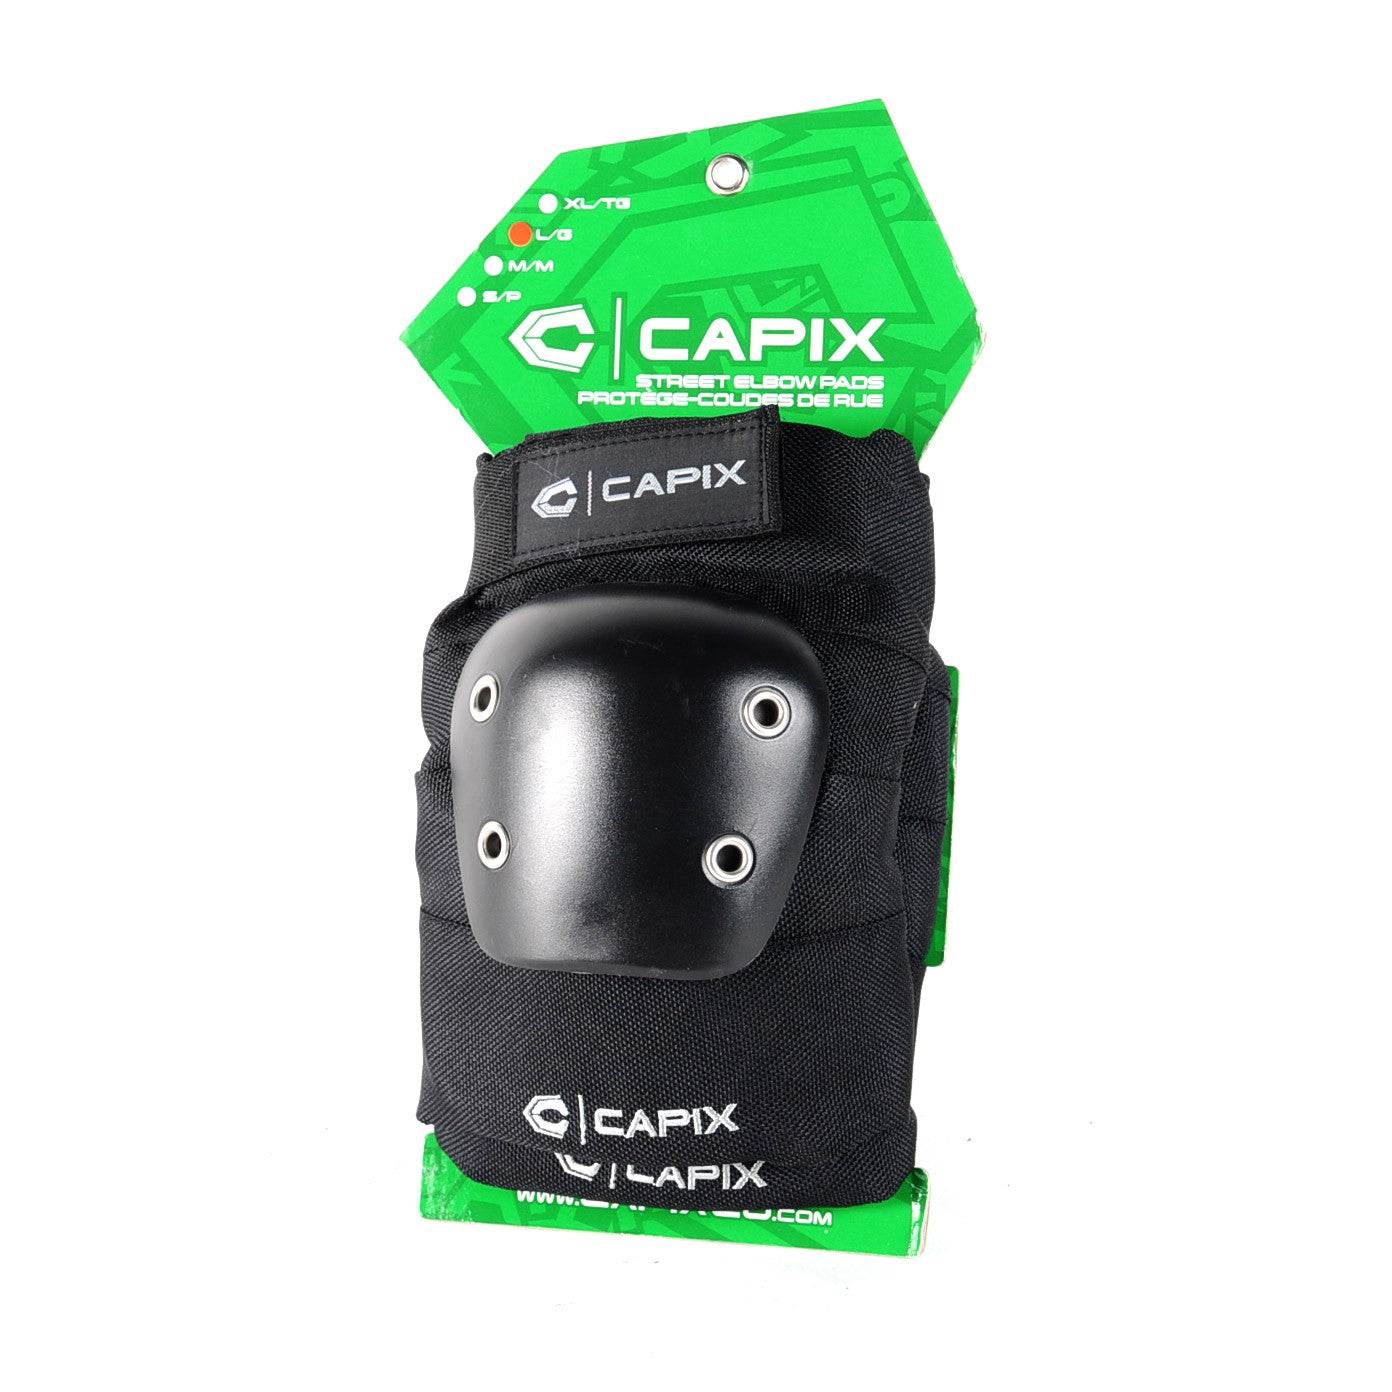 CAPIX Elbow Pads - Protection coudes pour le Skateboard